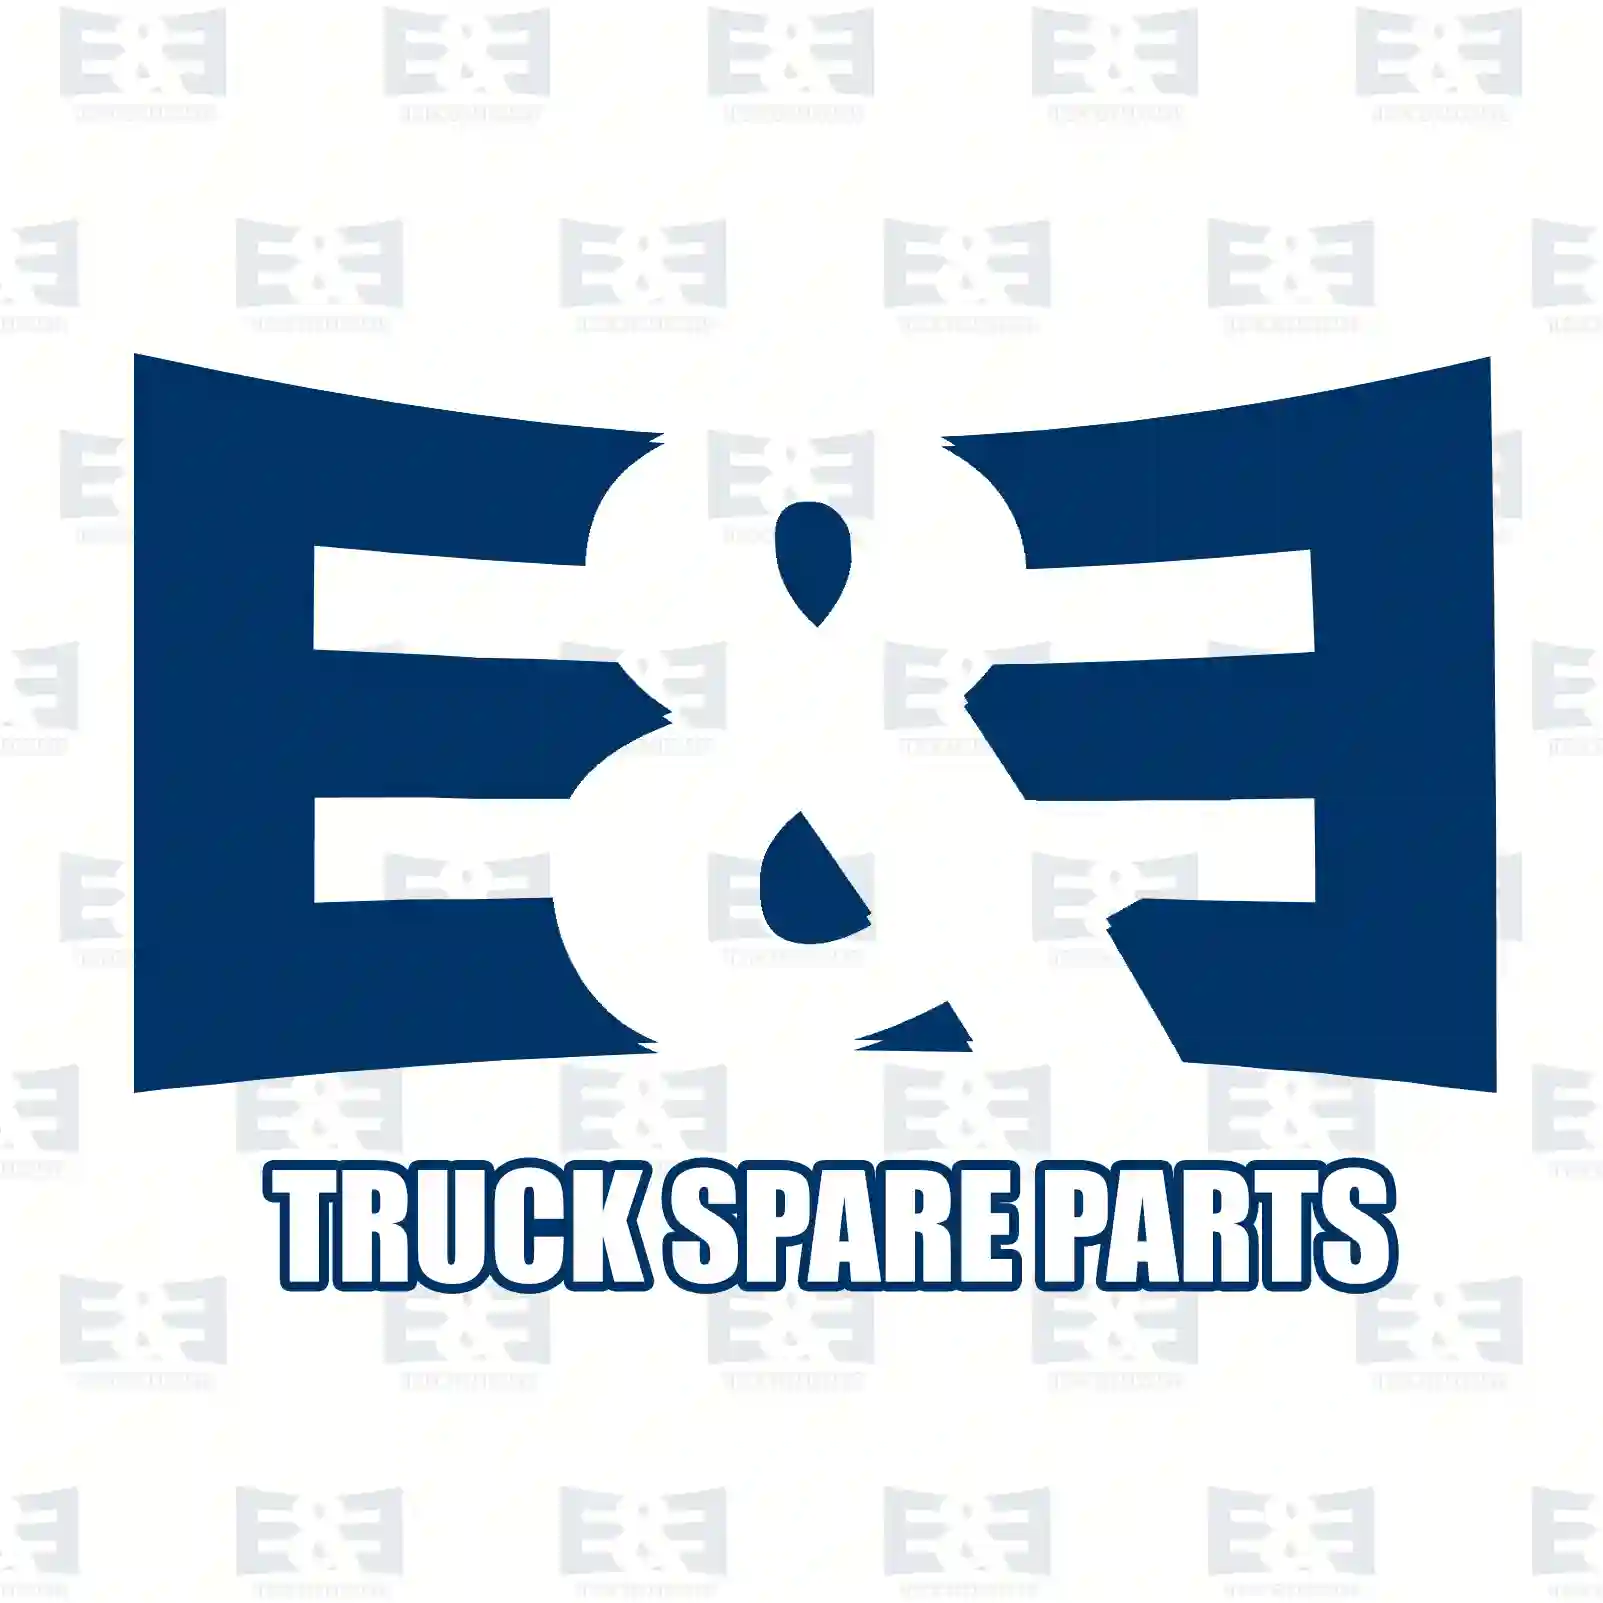 Brake drum, 2E2295196, 0117351, 117351, , , , , ||  2E2295196 E&E Truck Spare Parts | Truck Spare Parts, Auotomotive Spare Parts Brake drum, 2E2295196, 0117351, 117351, , , , , ||  2E2295196 E&E Truck Spare Parts | Truck Spare Parts, Auotomotive Spare Parts